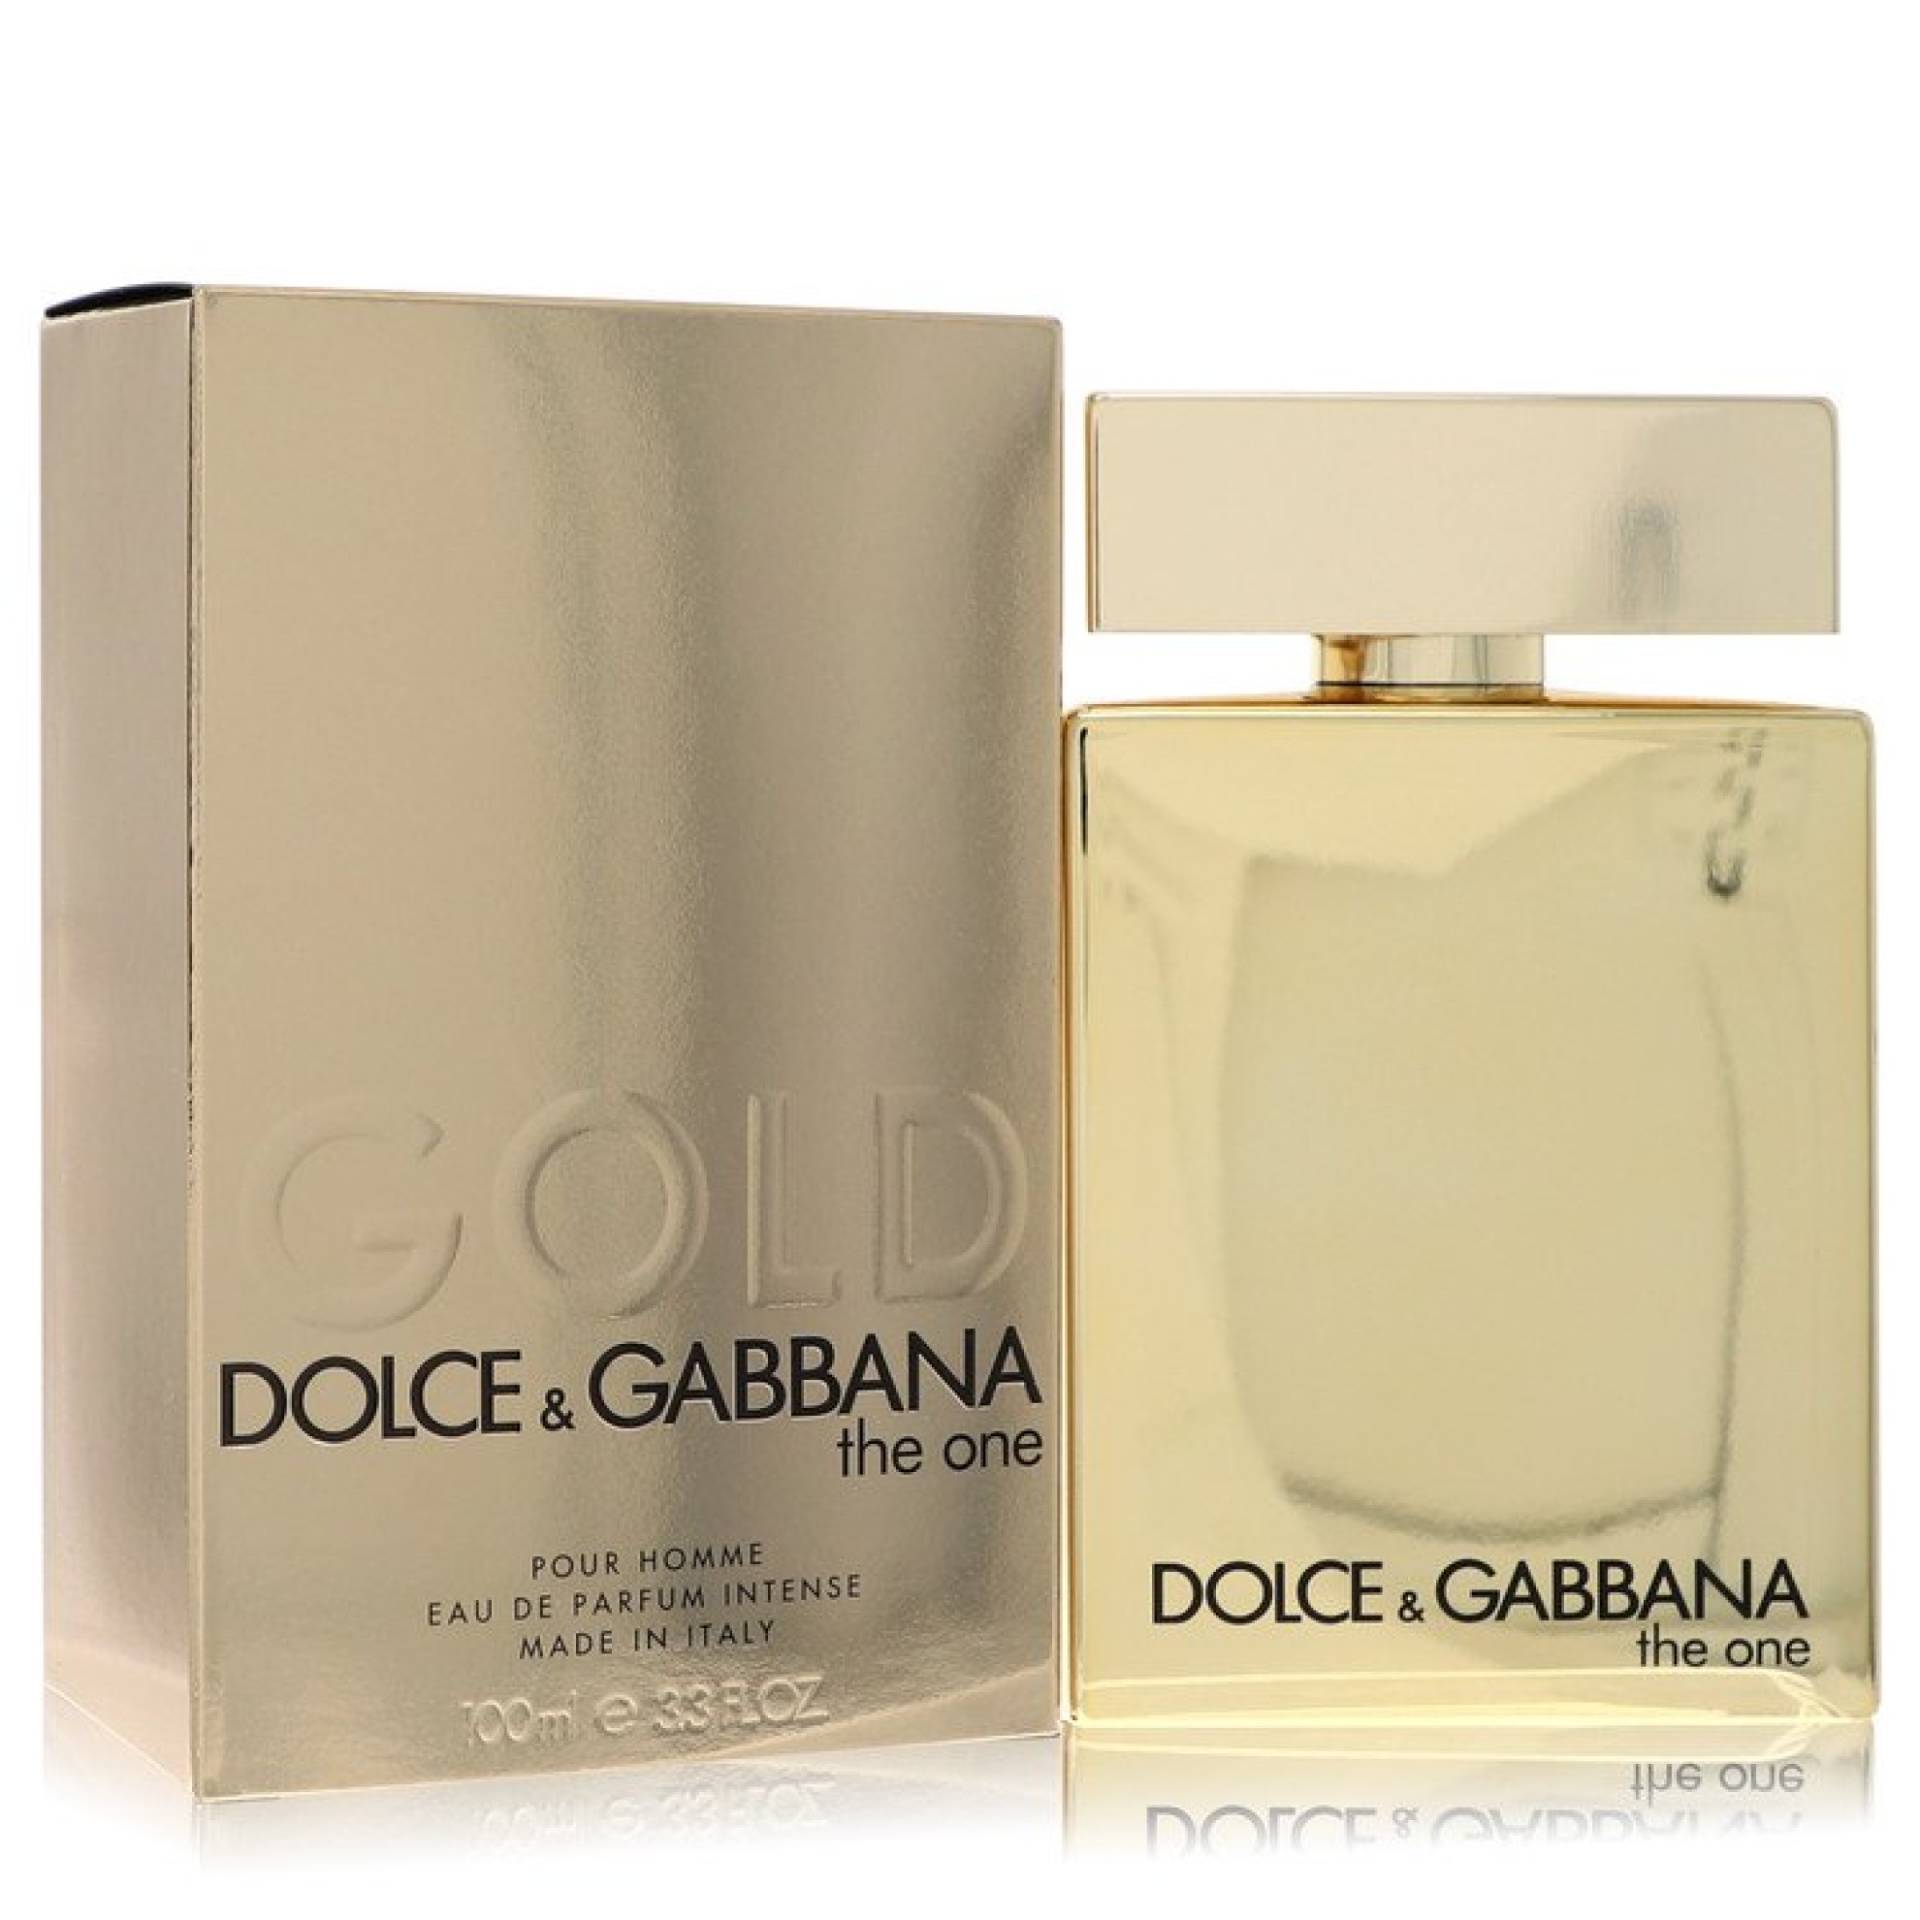 Dolce & Gabbana The One Gold Eau De Parfum Intense Spray 101 ml von Dolce & Gabbana